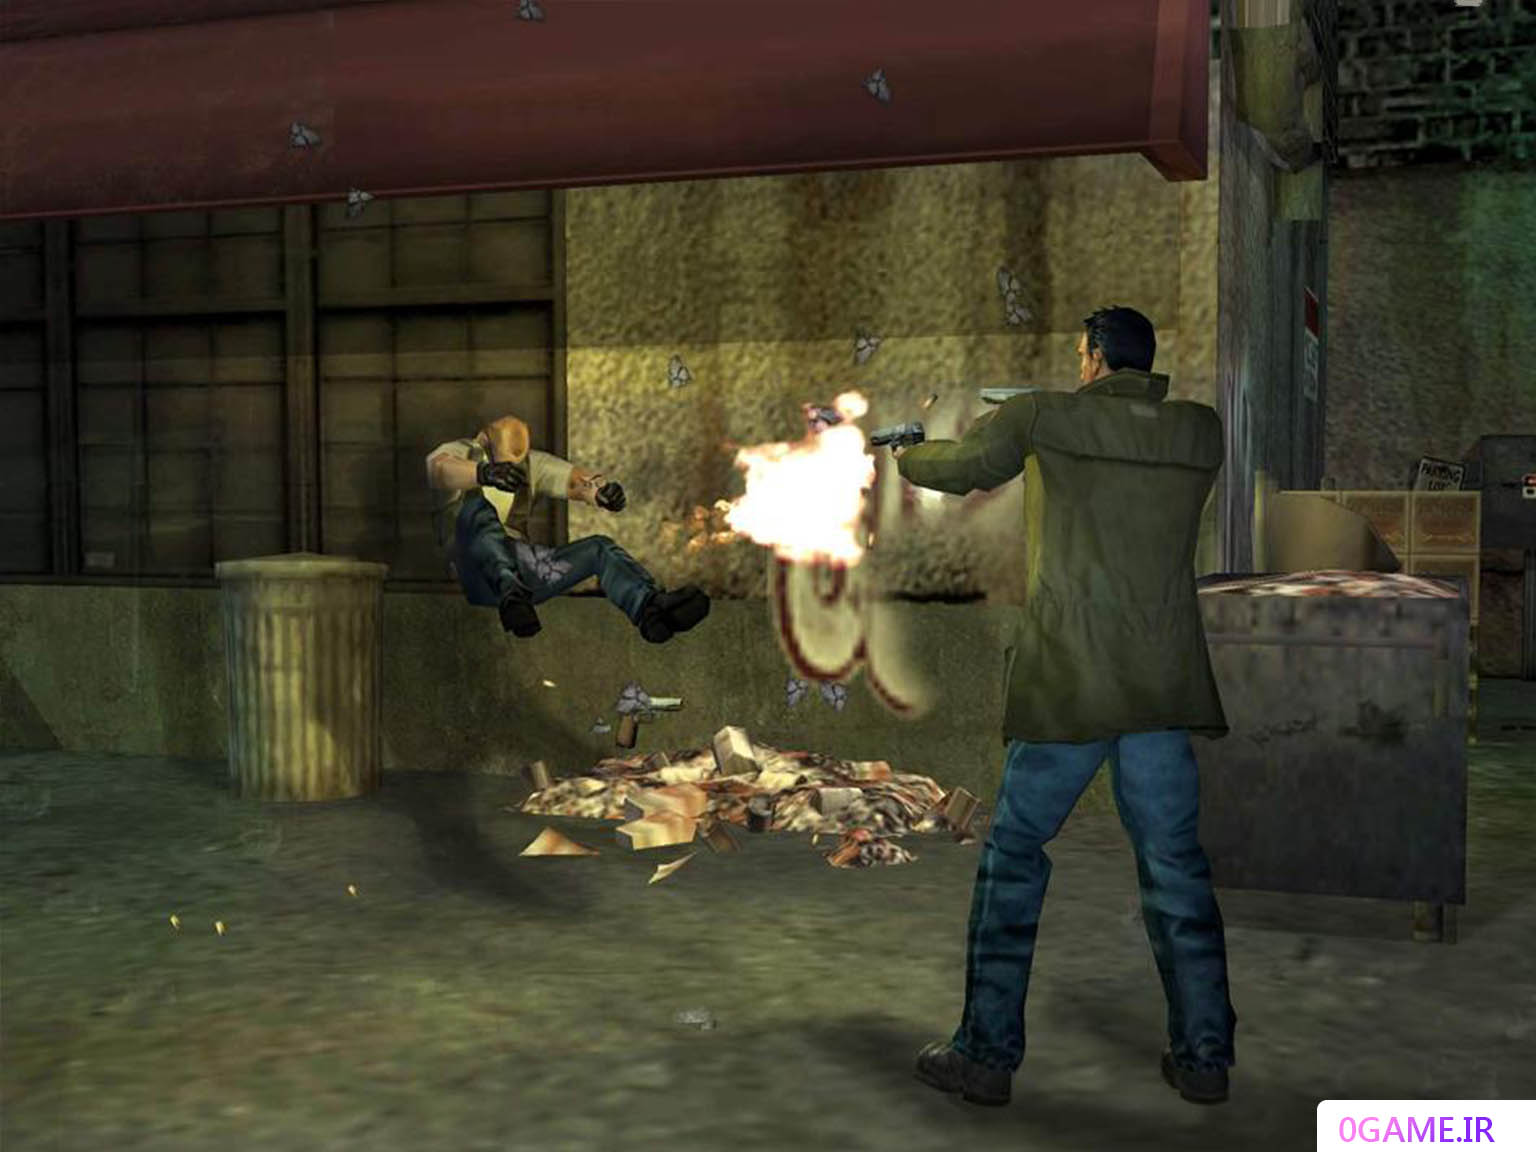 دانلود بازی مستقیم به سمت مرگ 2 (Dead to Rights) نسخه کامل برای کامپیوتر